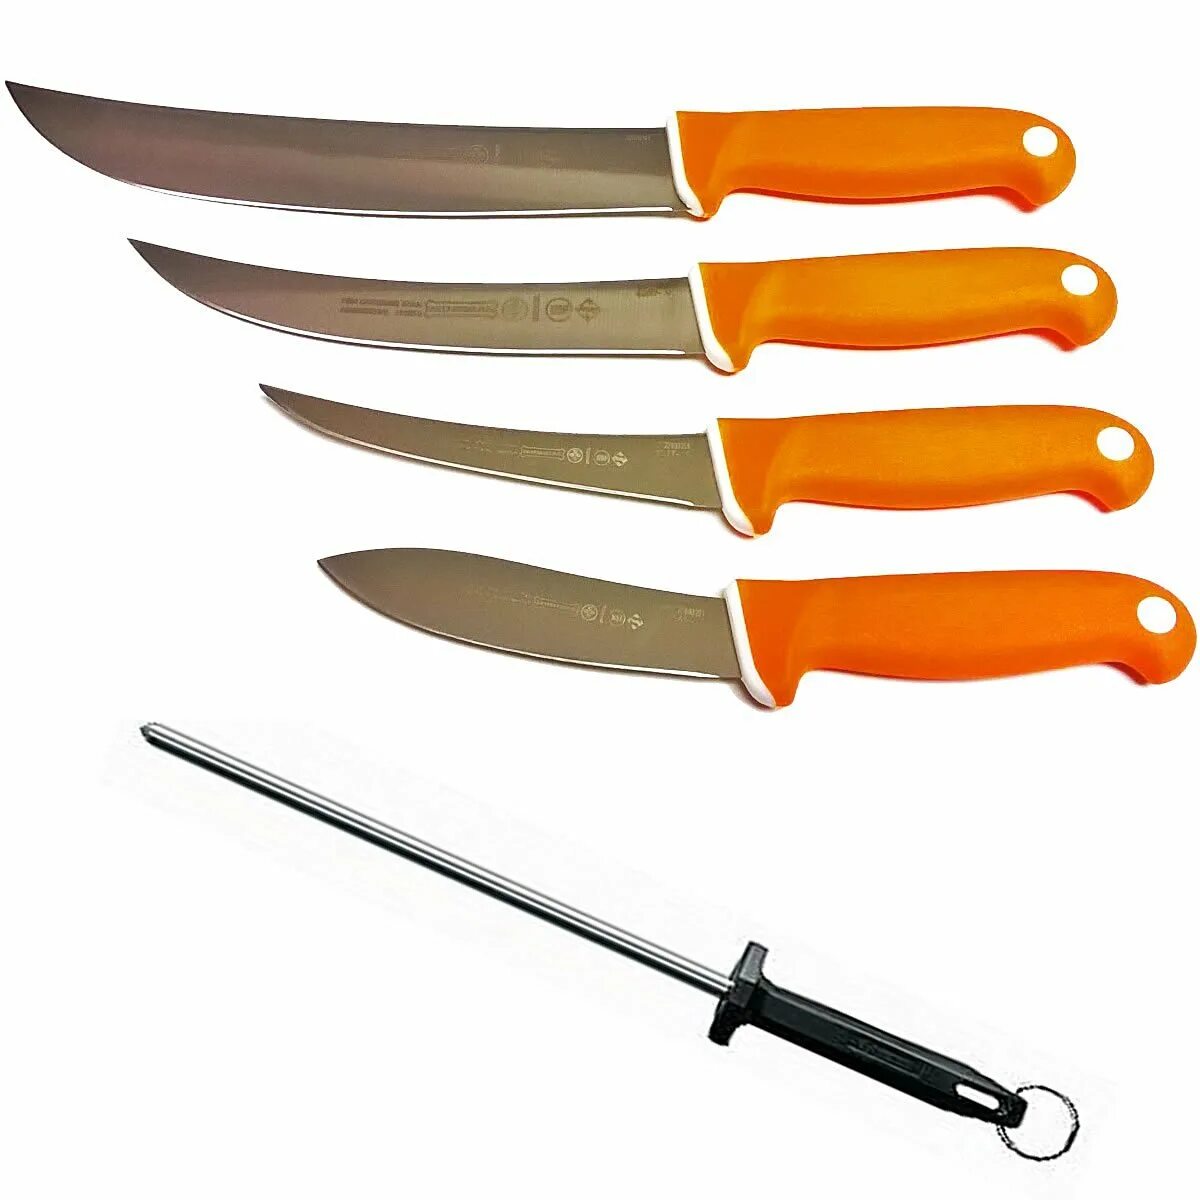 Butcher нож обвалочный. Нож для обвалки мяса мяса. Нож обвалочный Ятаган. Нож для обвалки мяса профессиональный.